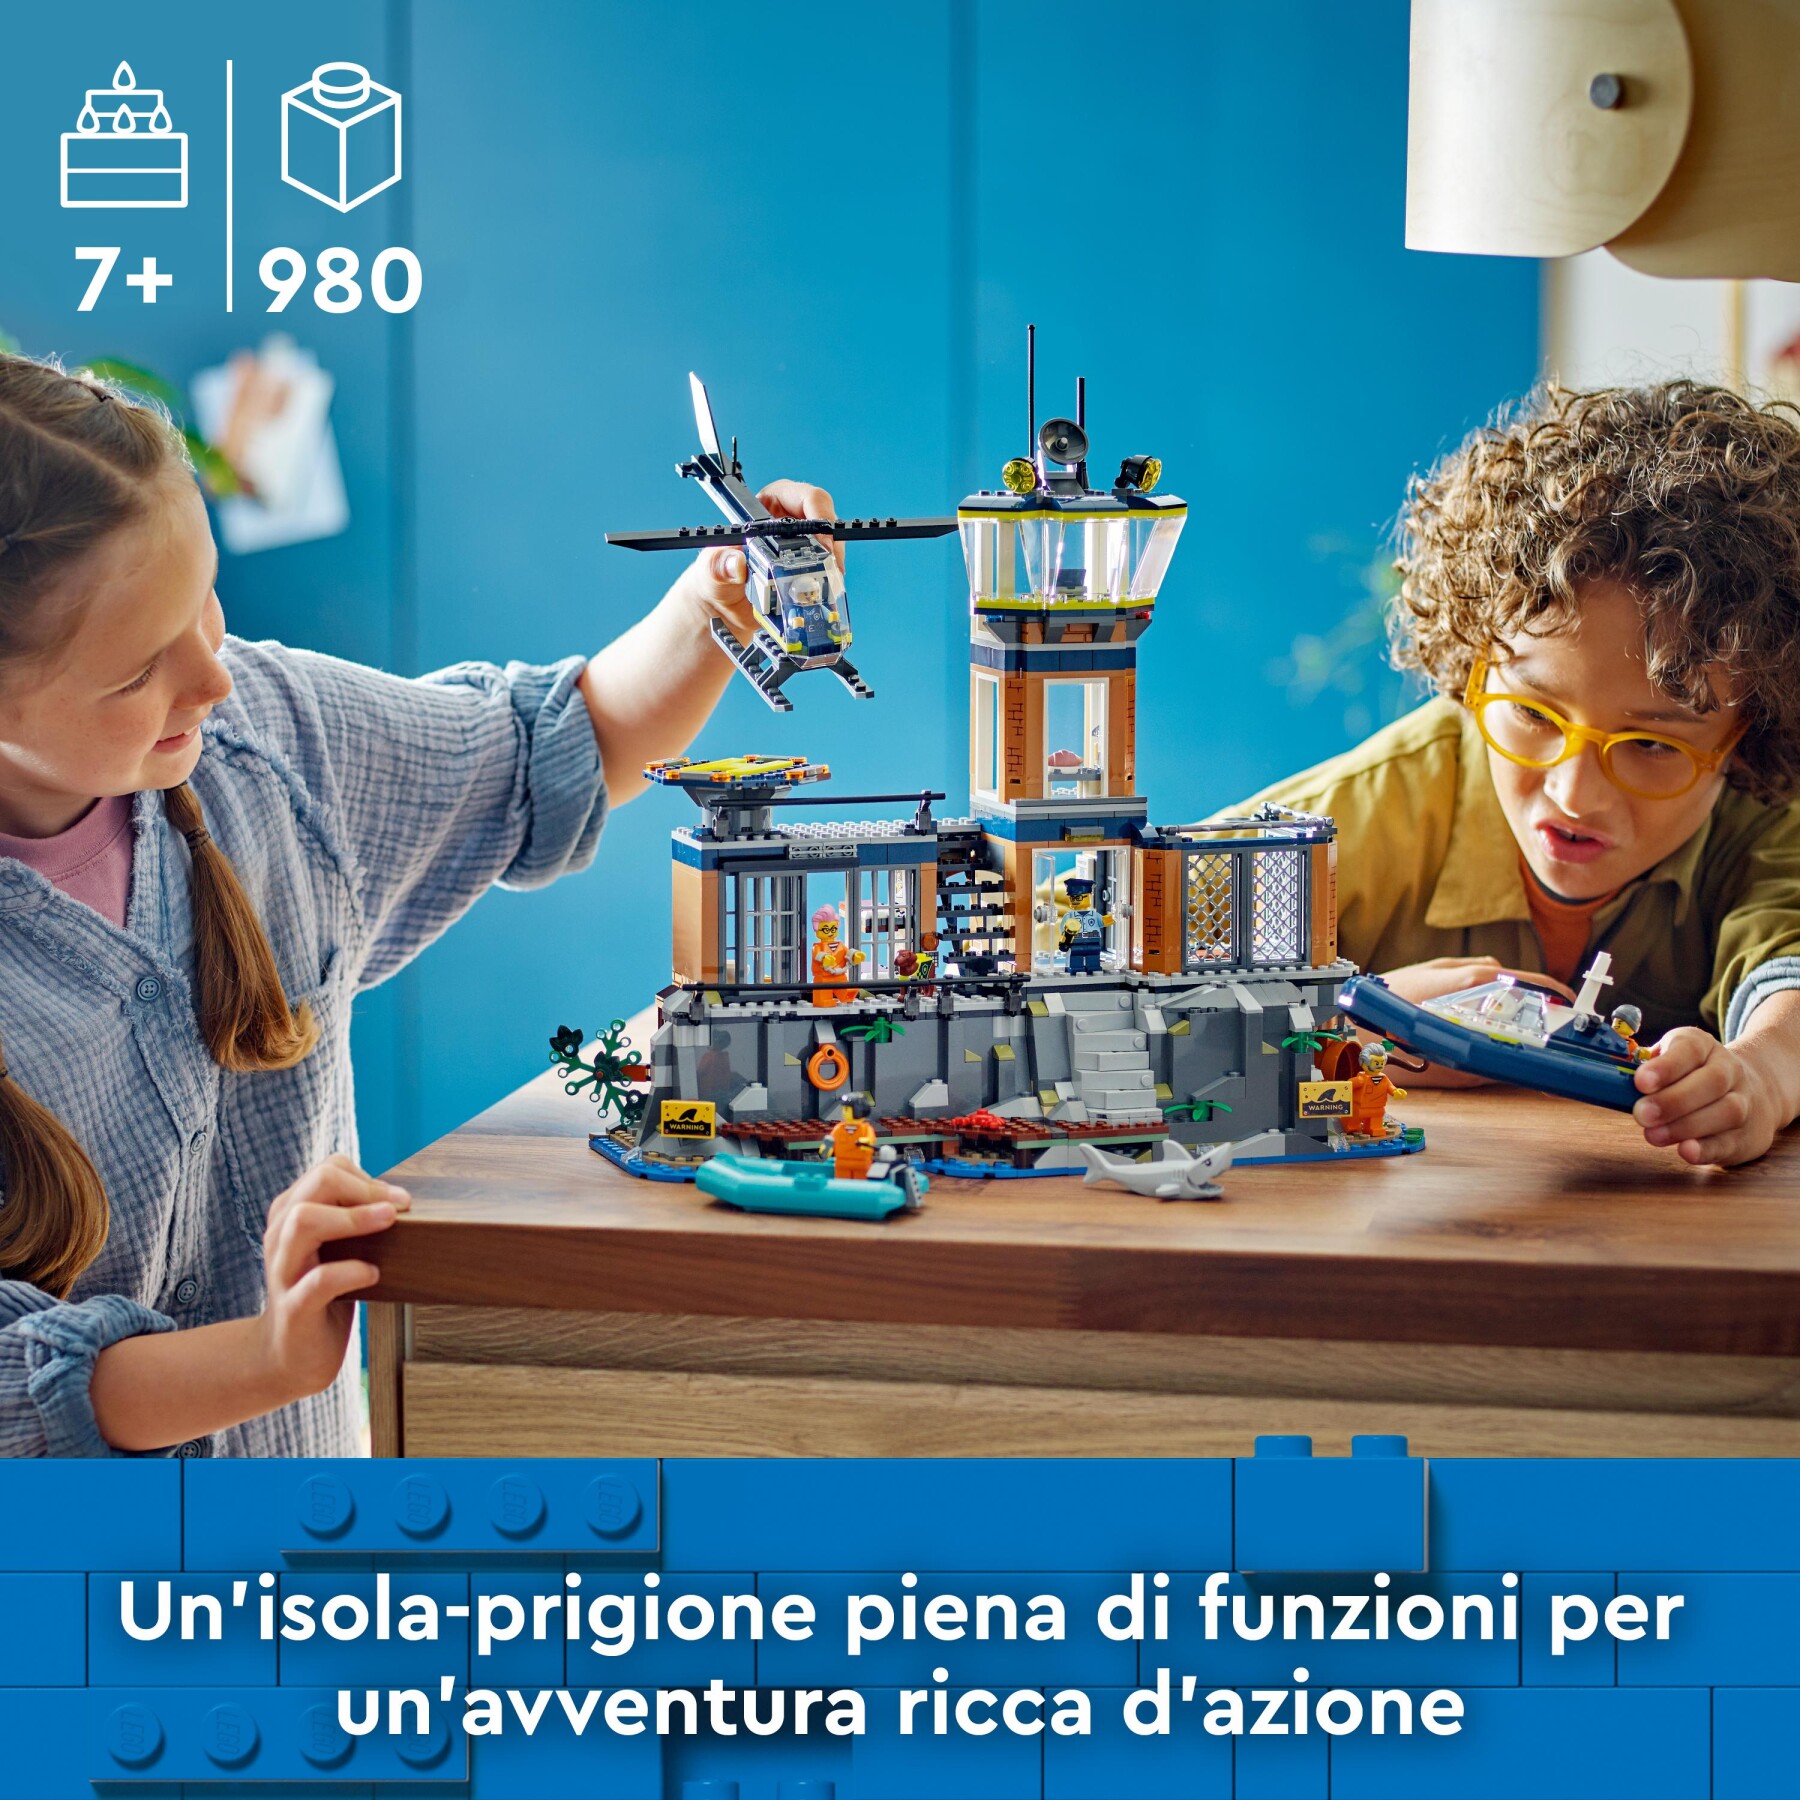 Lego city 60419 prigione sull’isola della polizia, giocattolo ricco di funzioni con elicottero, barca, gommone e 7 minifigure - LEGO CITY